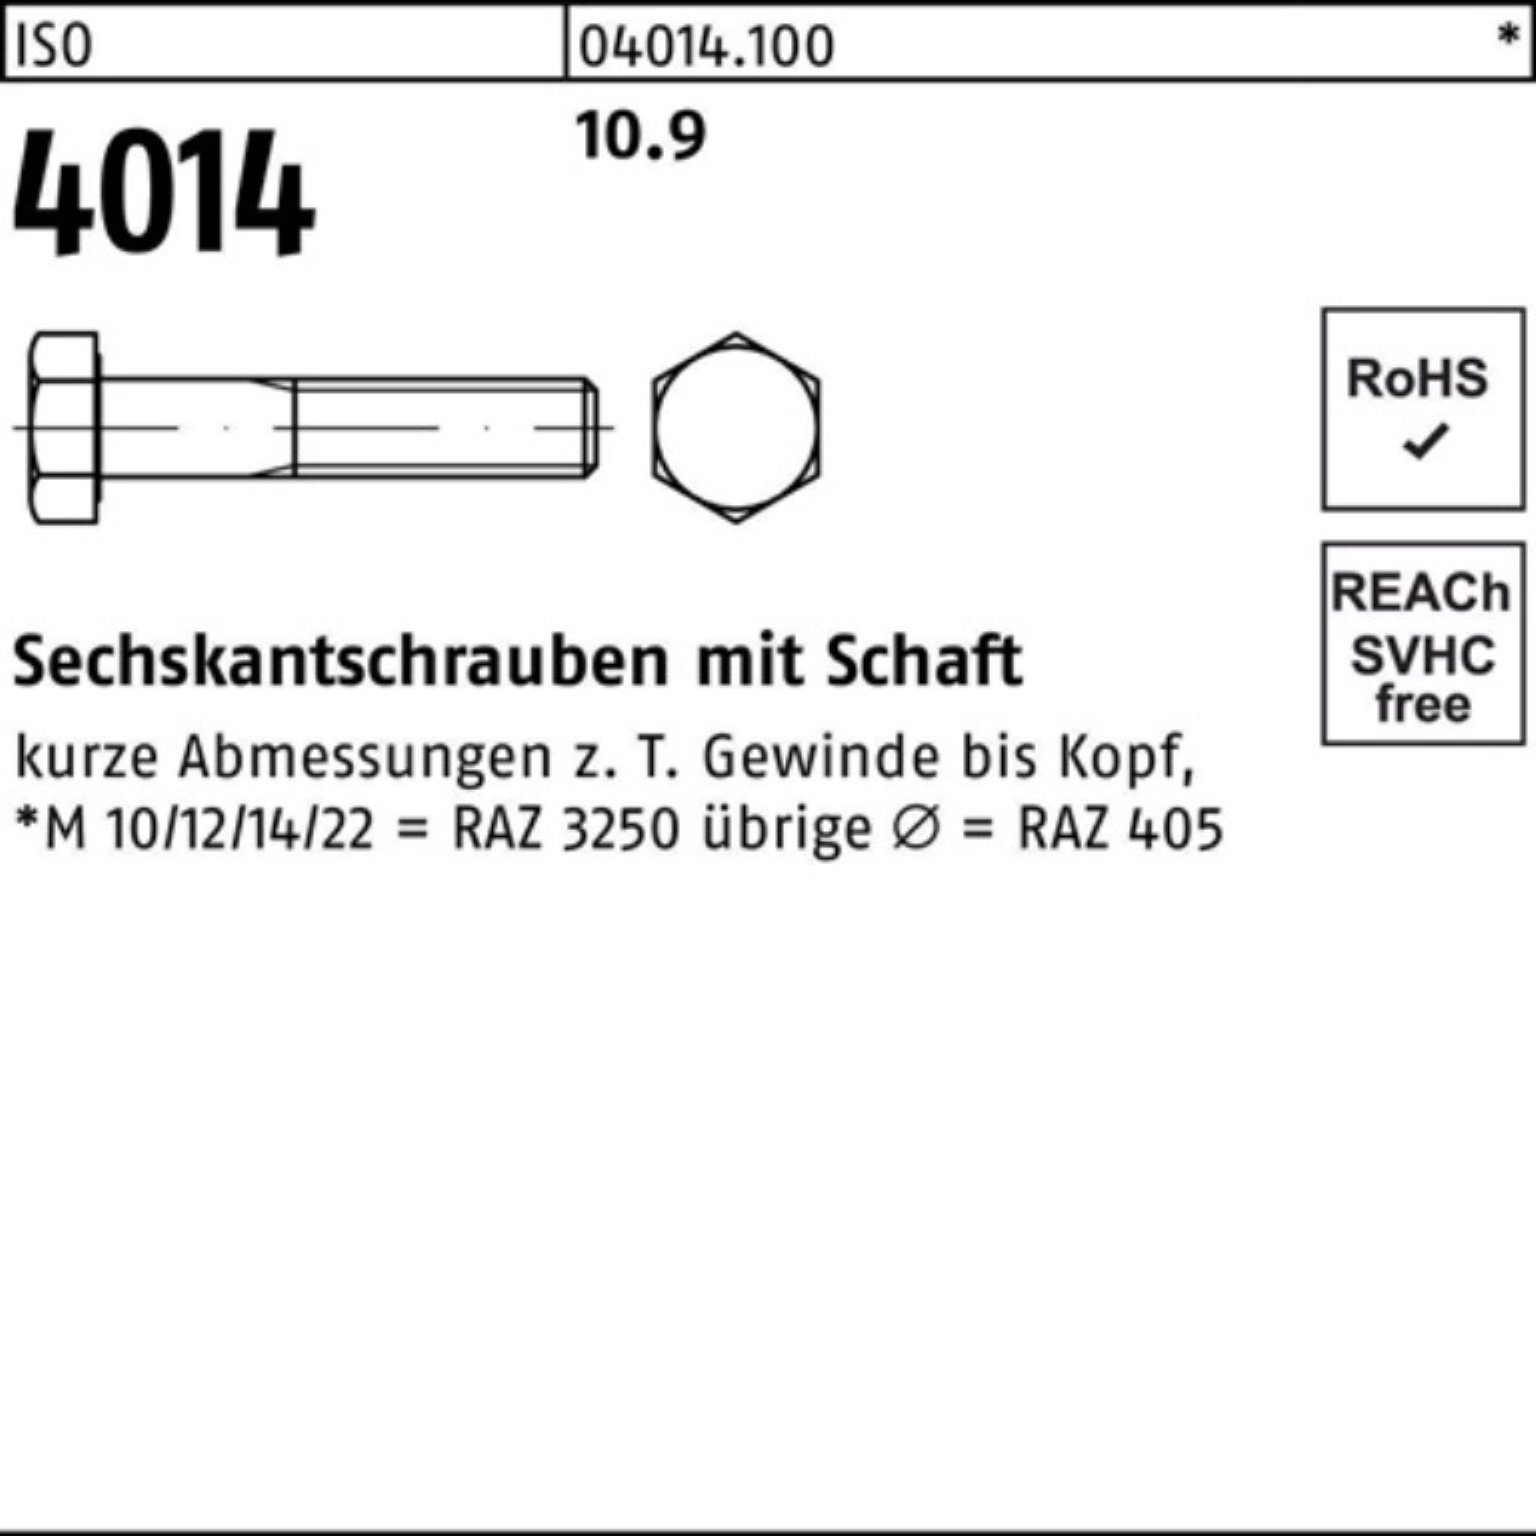 Bufab Sechskantschraube 100er 10.9 Sechskantschraube Schaft 320 1 IS M22x 4014 ISO Stück Pack